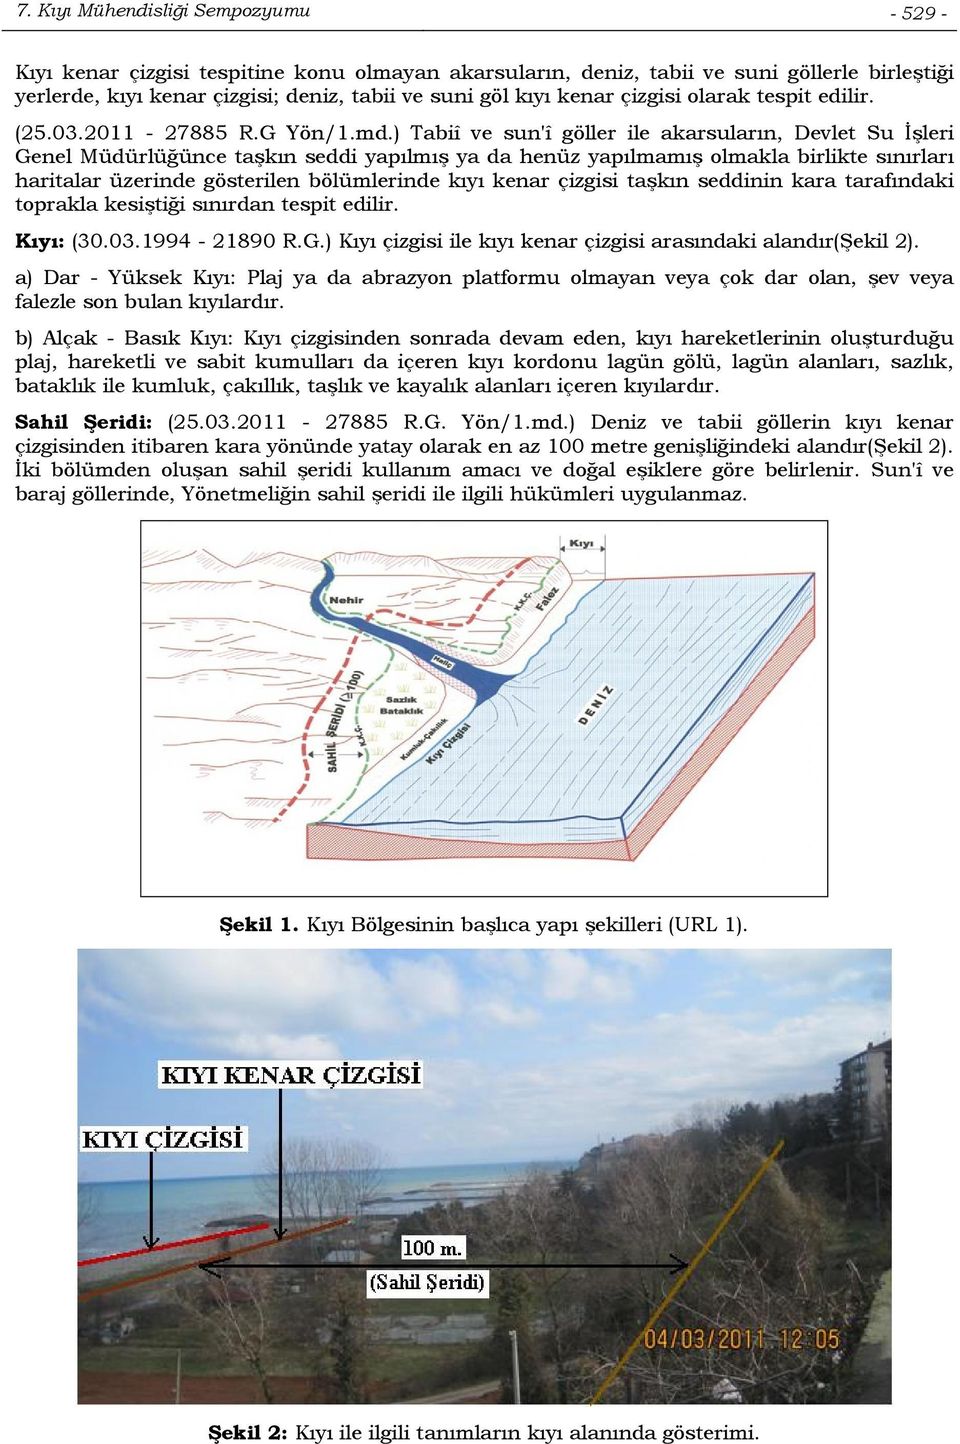 ) Tabiî ve sun'î göller ile akarsuların, Devlet Su İşleri Genel Müdürlüğünce taşkın seddi yapılmış ya da henüz yapılmamış olmakla birlikte sınırları haritalar üzerinde gösterilen bölümlerinde kıyı